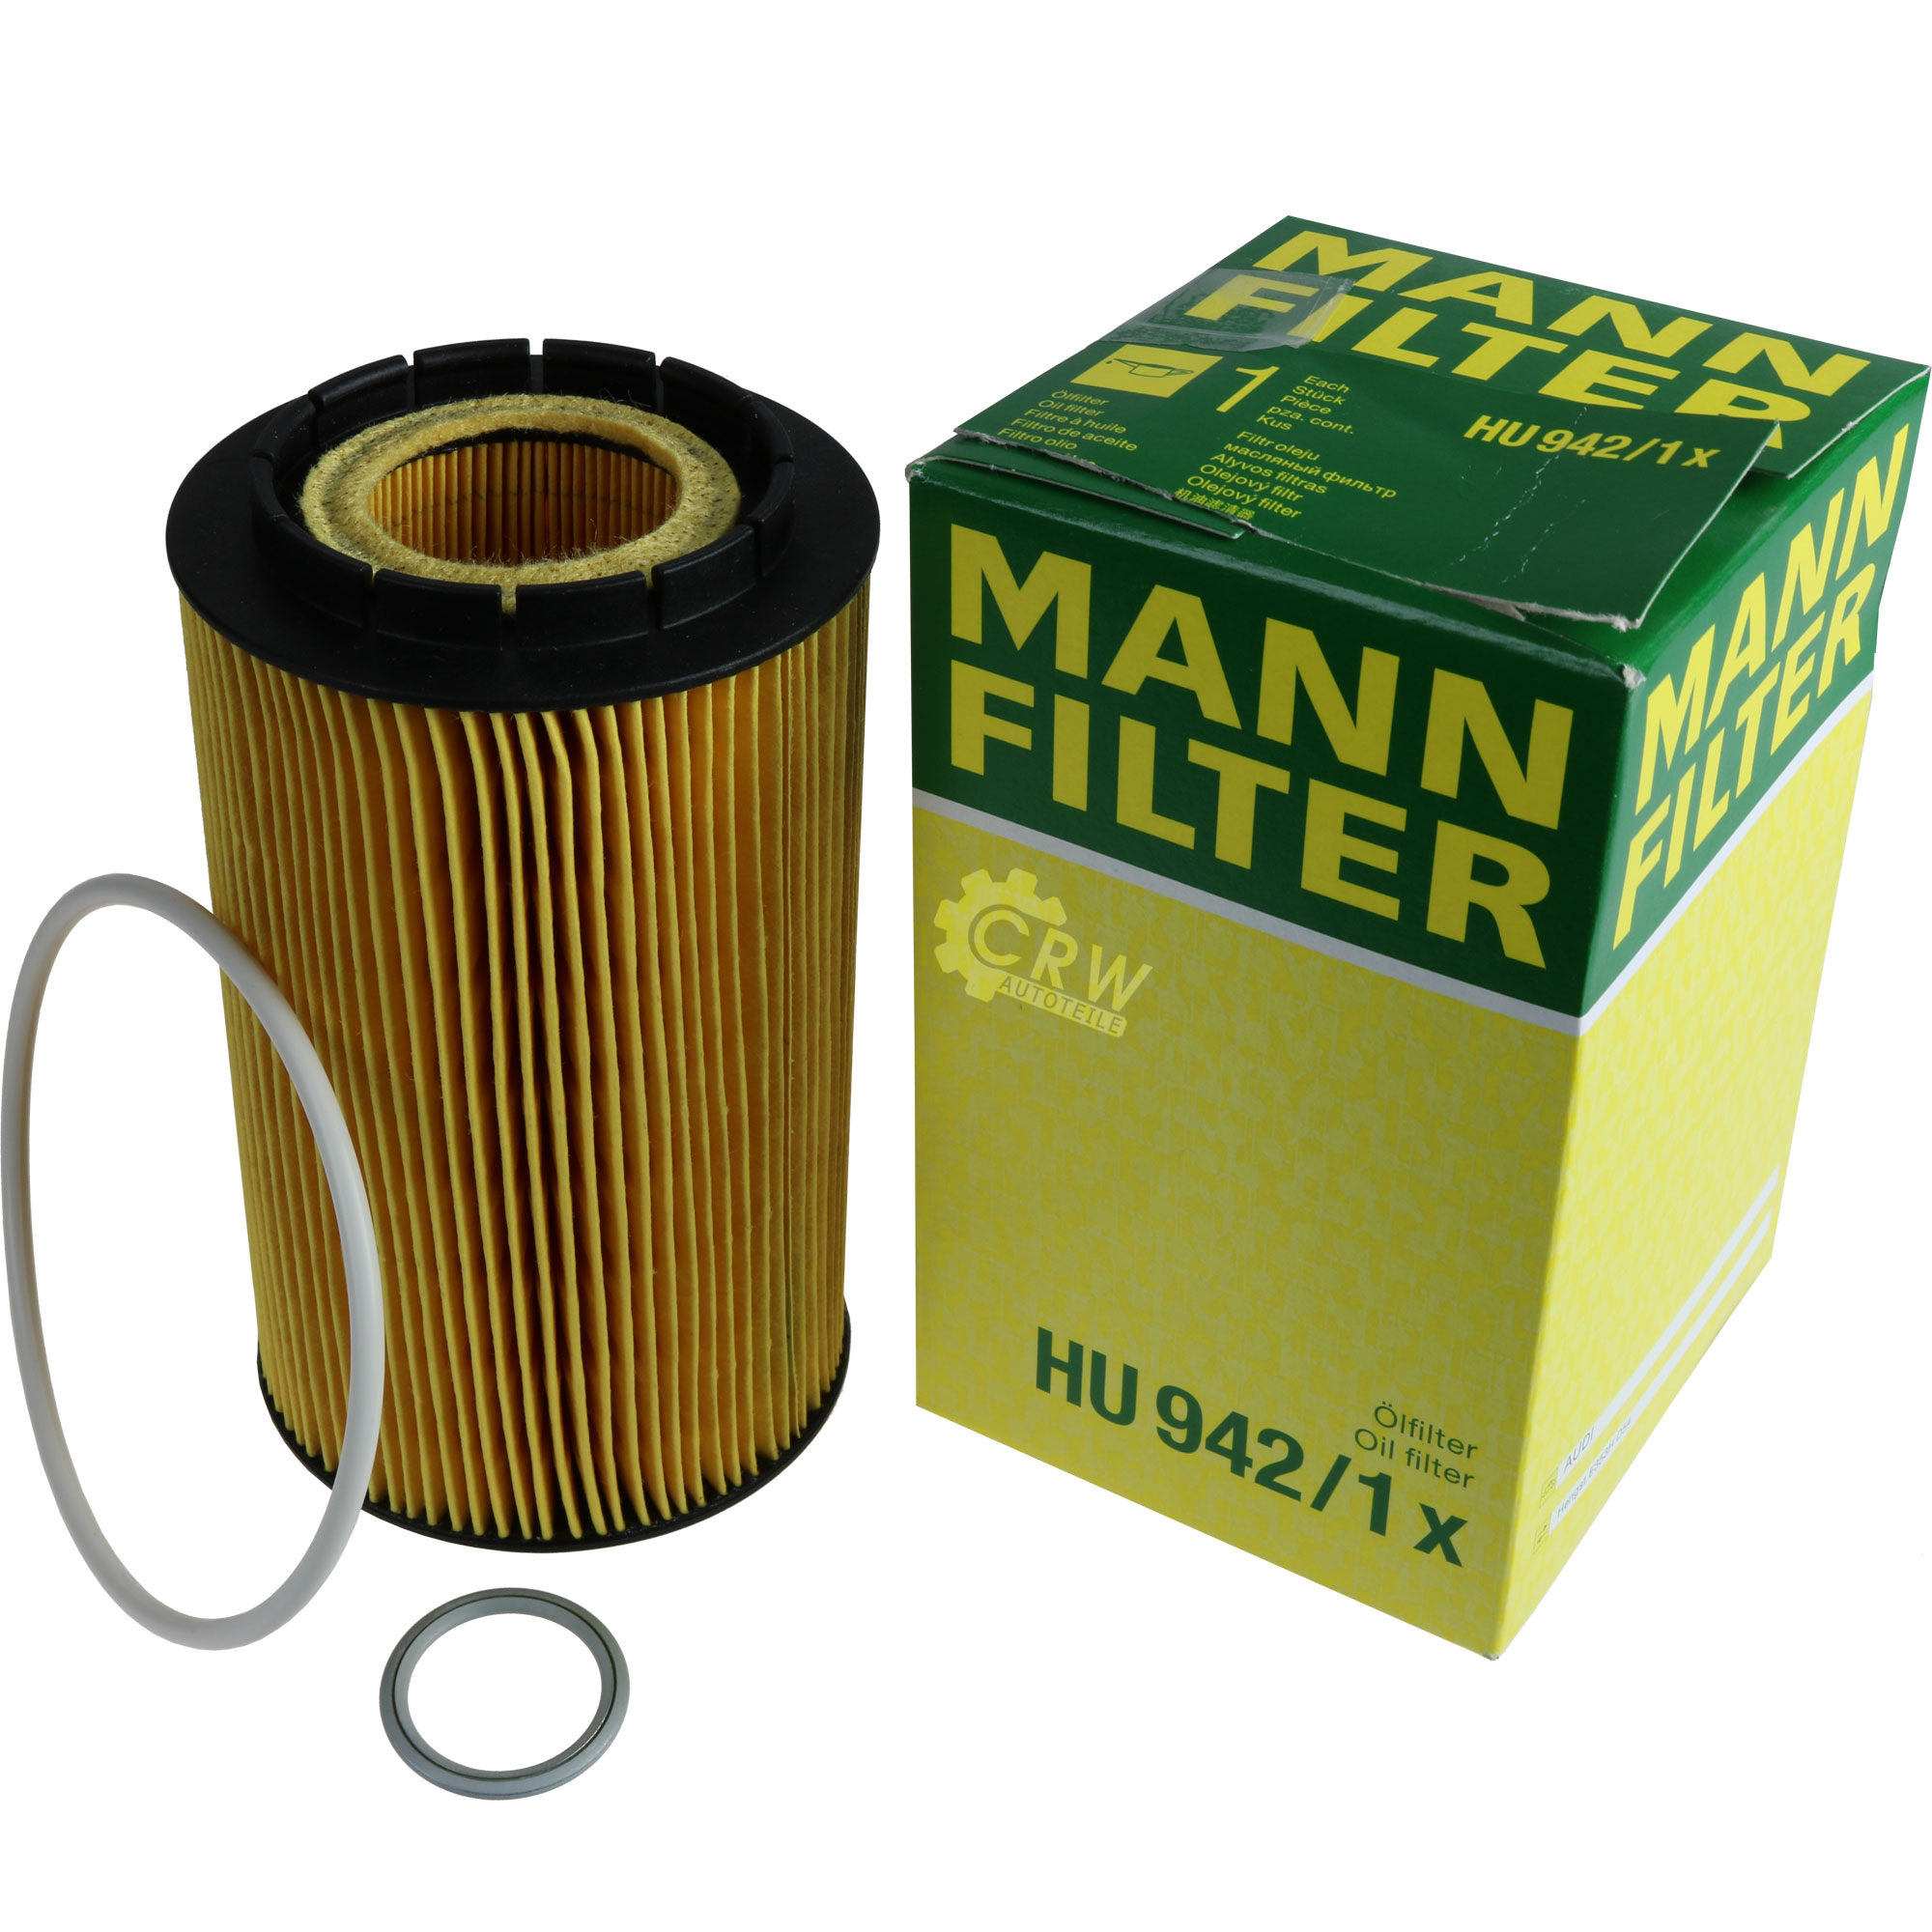 MANN-FILTER Ölfilter HU 942/1 x Oil Filter